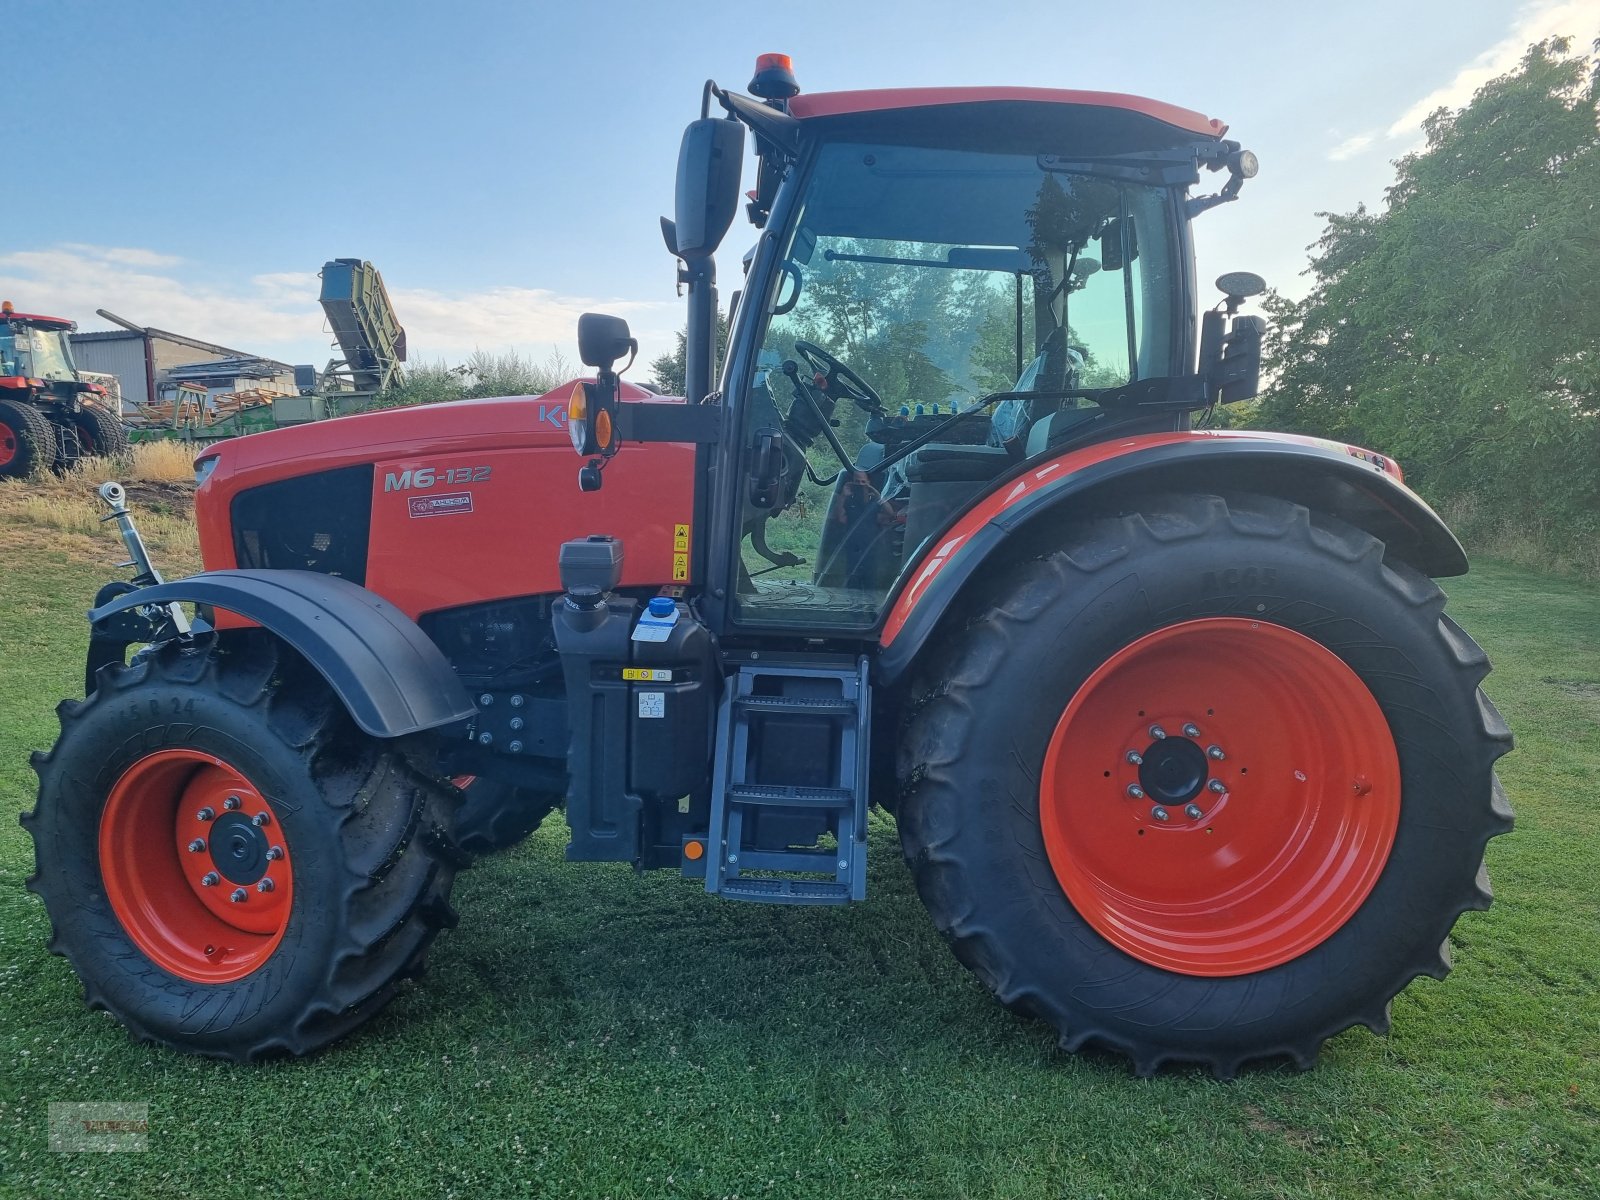 Traktor типа Kubota M6-132 Aktion Finanzierung 60 Monate mit 0,00 % Zinsen, Gebrauchtmaschine в Bensheim - Schwanheim (Фотография 2)